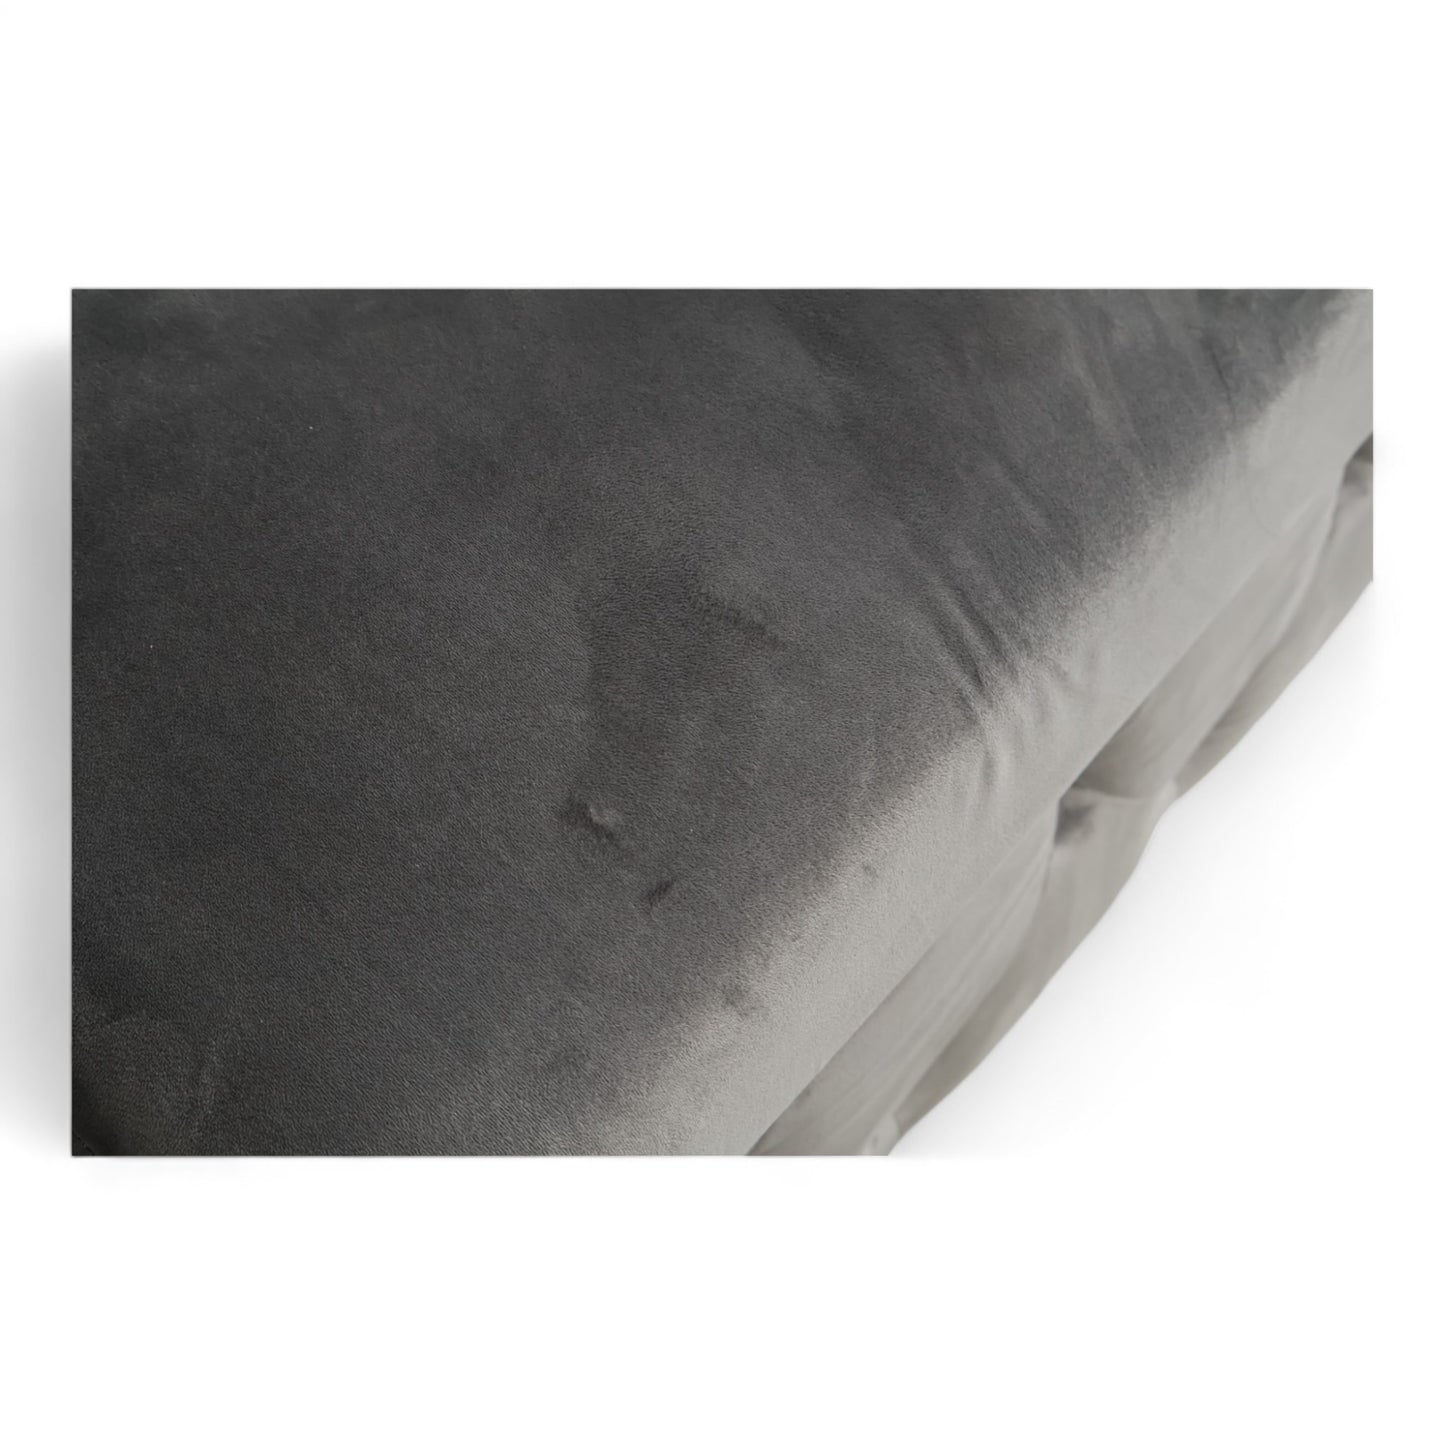 Nyrenset | Bella 2-seter sofa fra A-Møbler